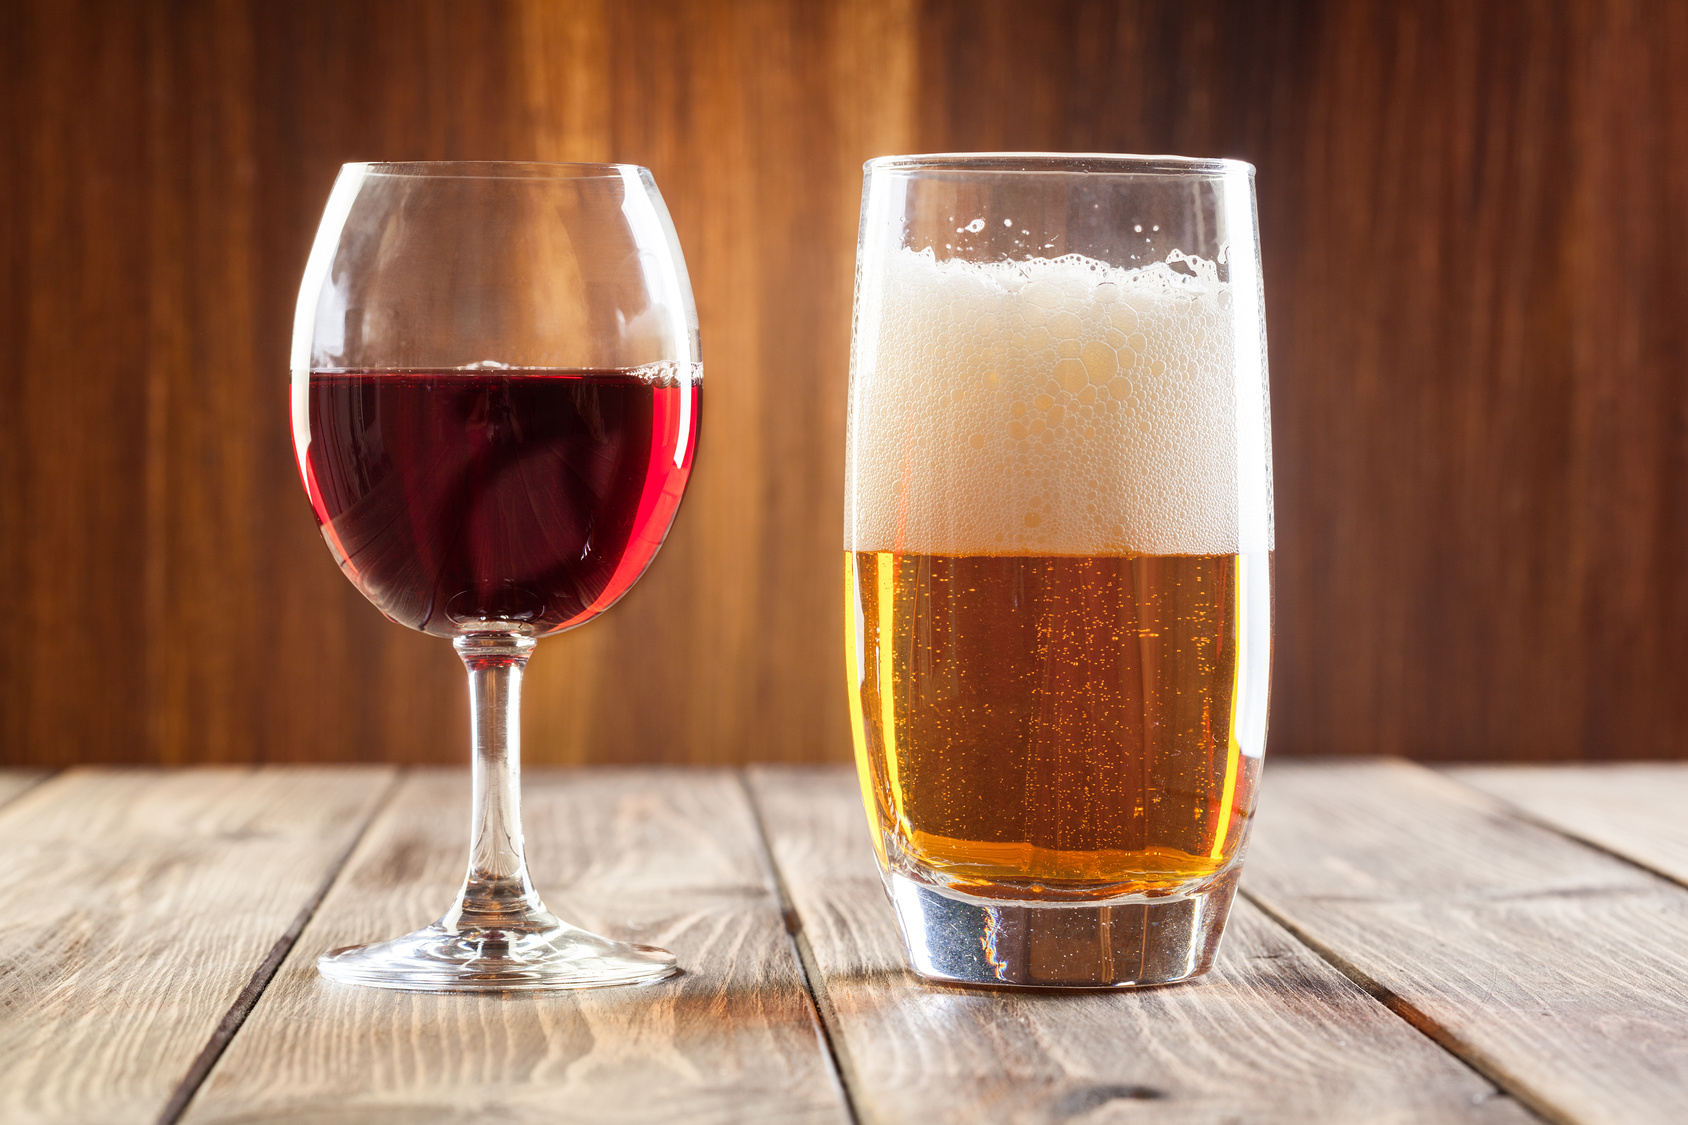 Beer and Wine Hybrid Making Headlines